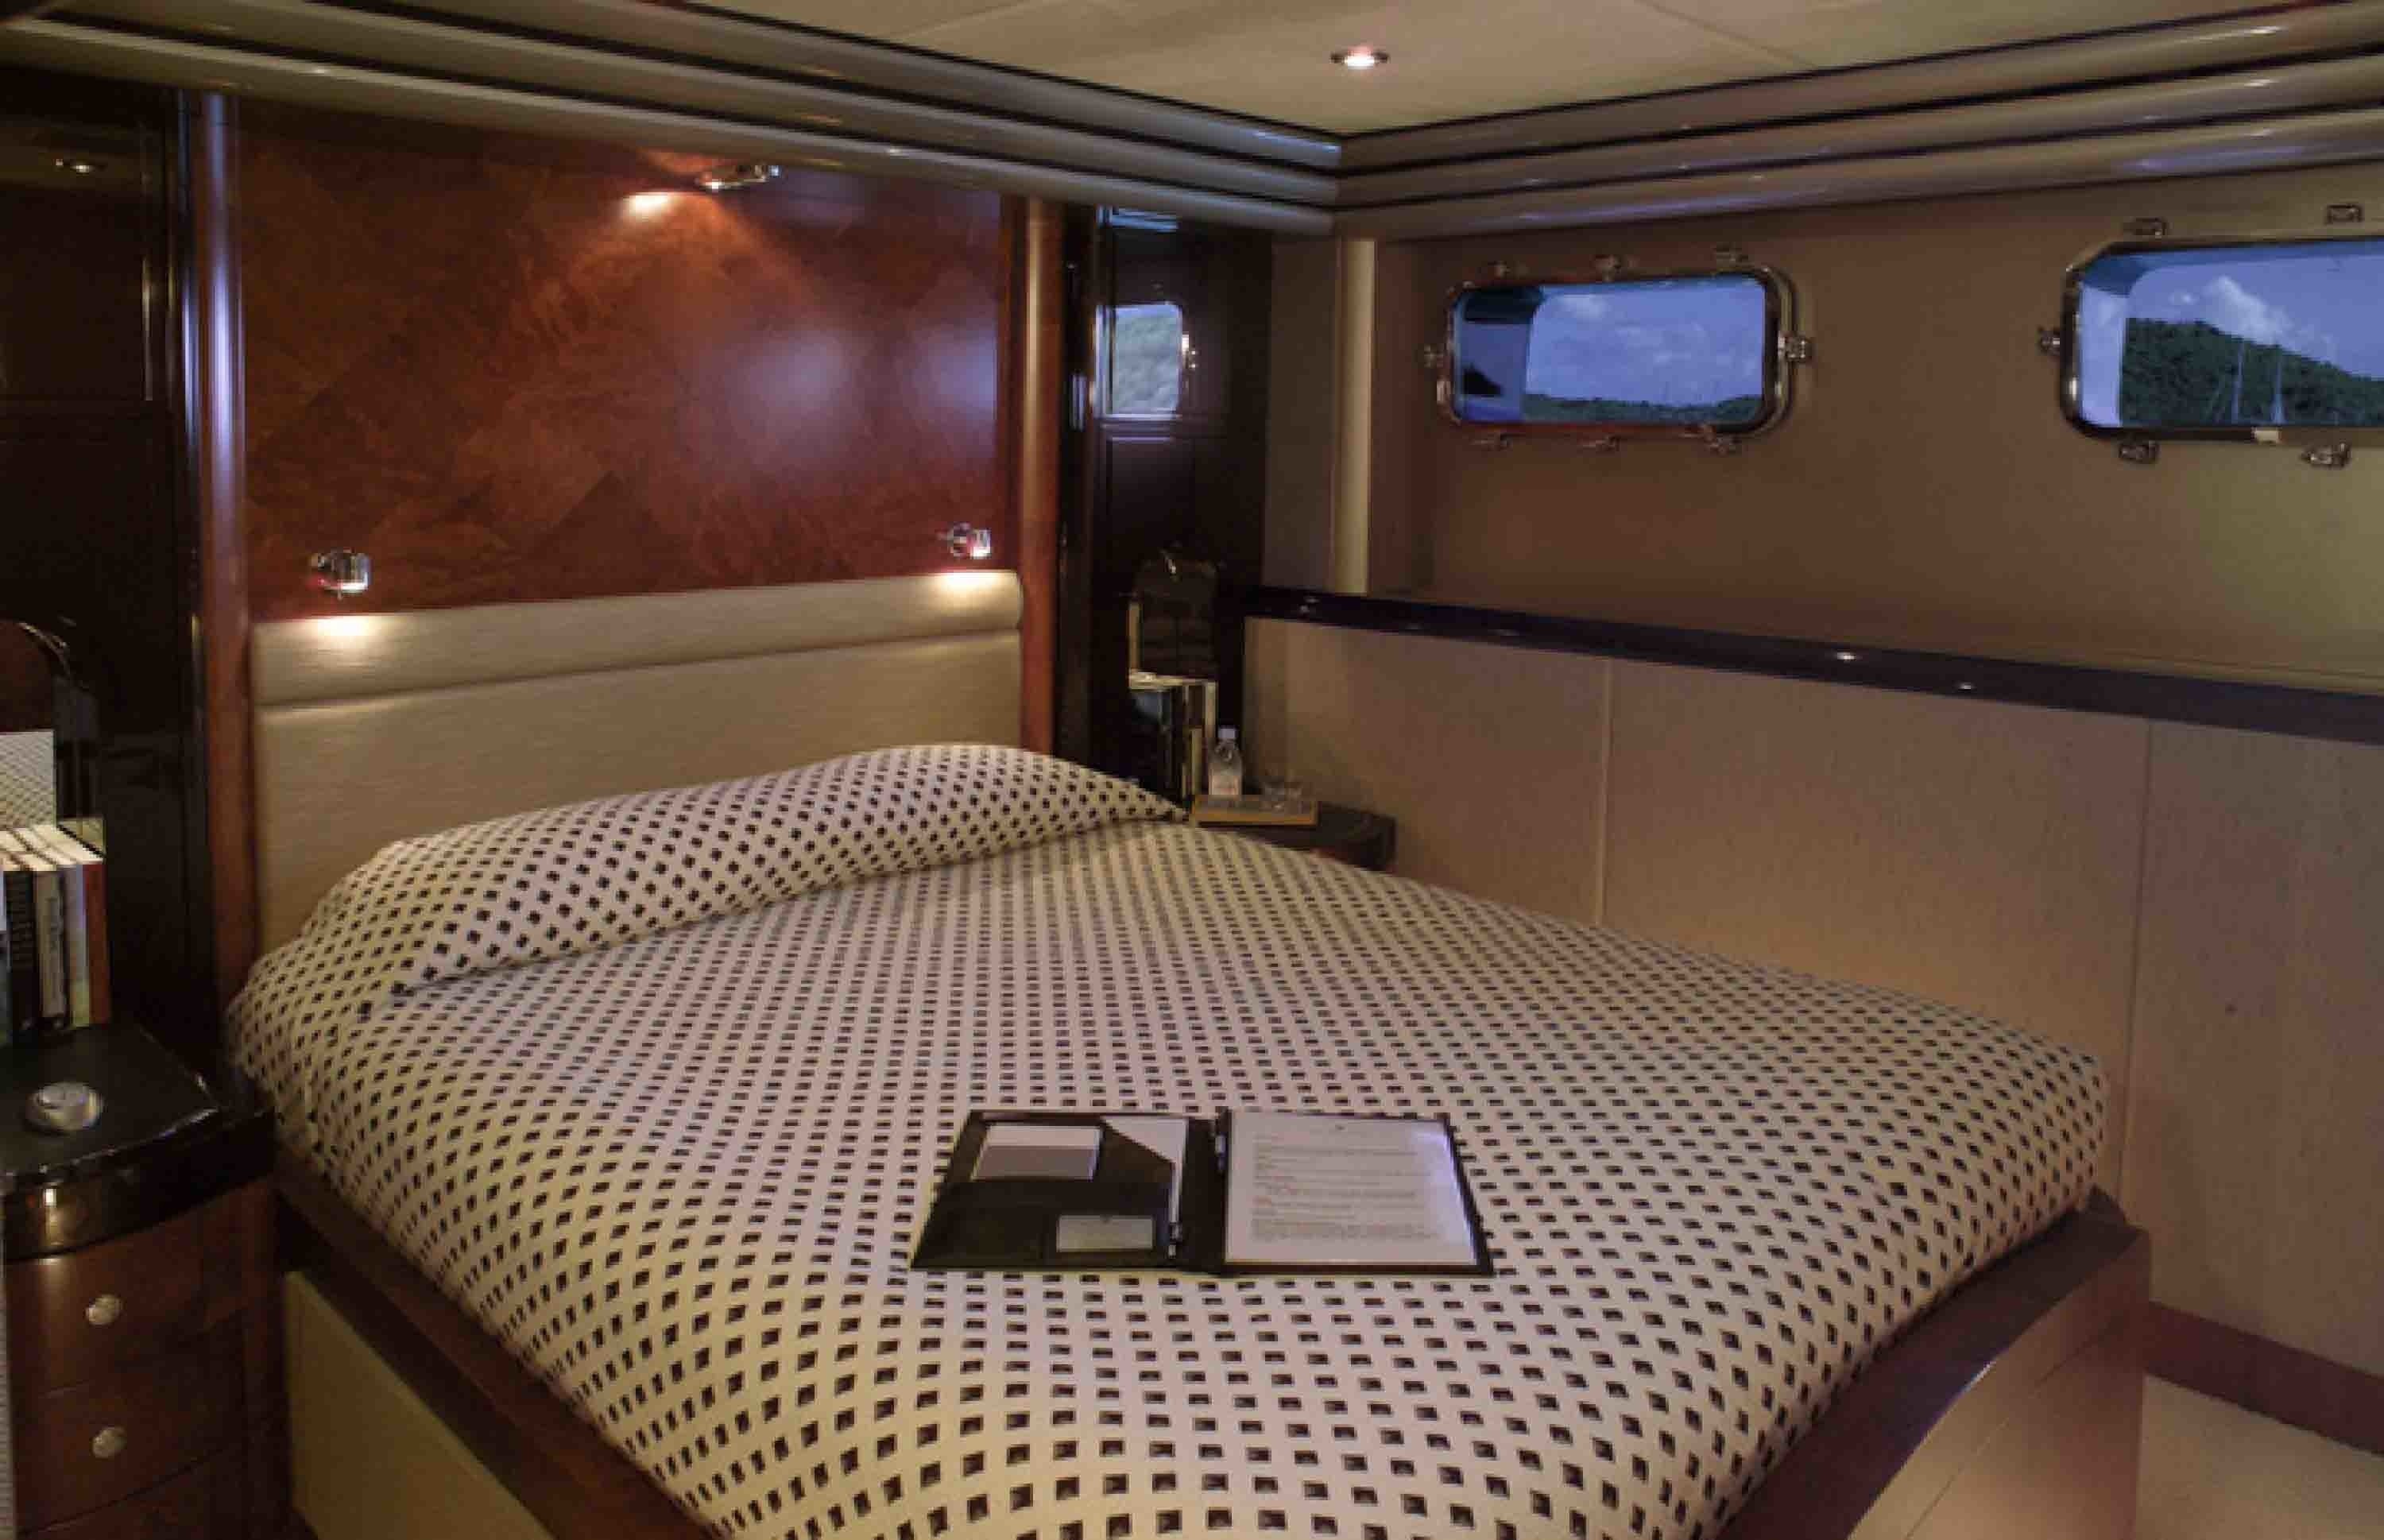 Guest's Cabin Aboard Yacht SILVER DREAM